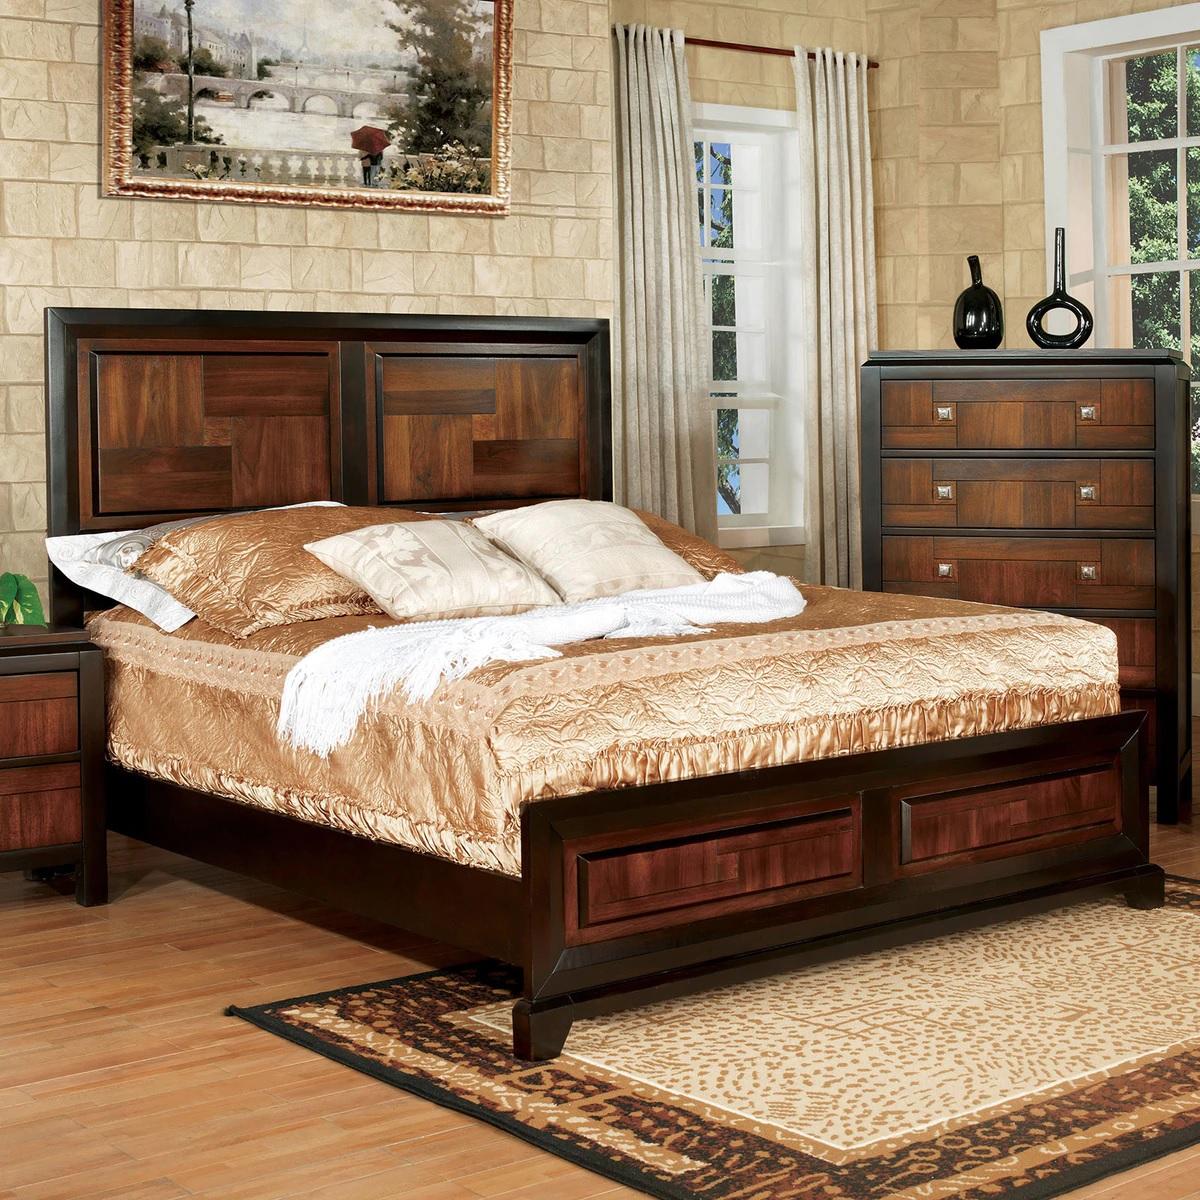 

    
Transitional Acacia & Walnut Solid Wood Queen Bedroom Set 5pcs Furniture of America CM7152-Q Patra
